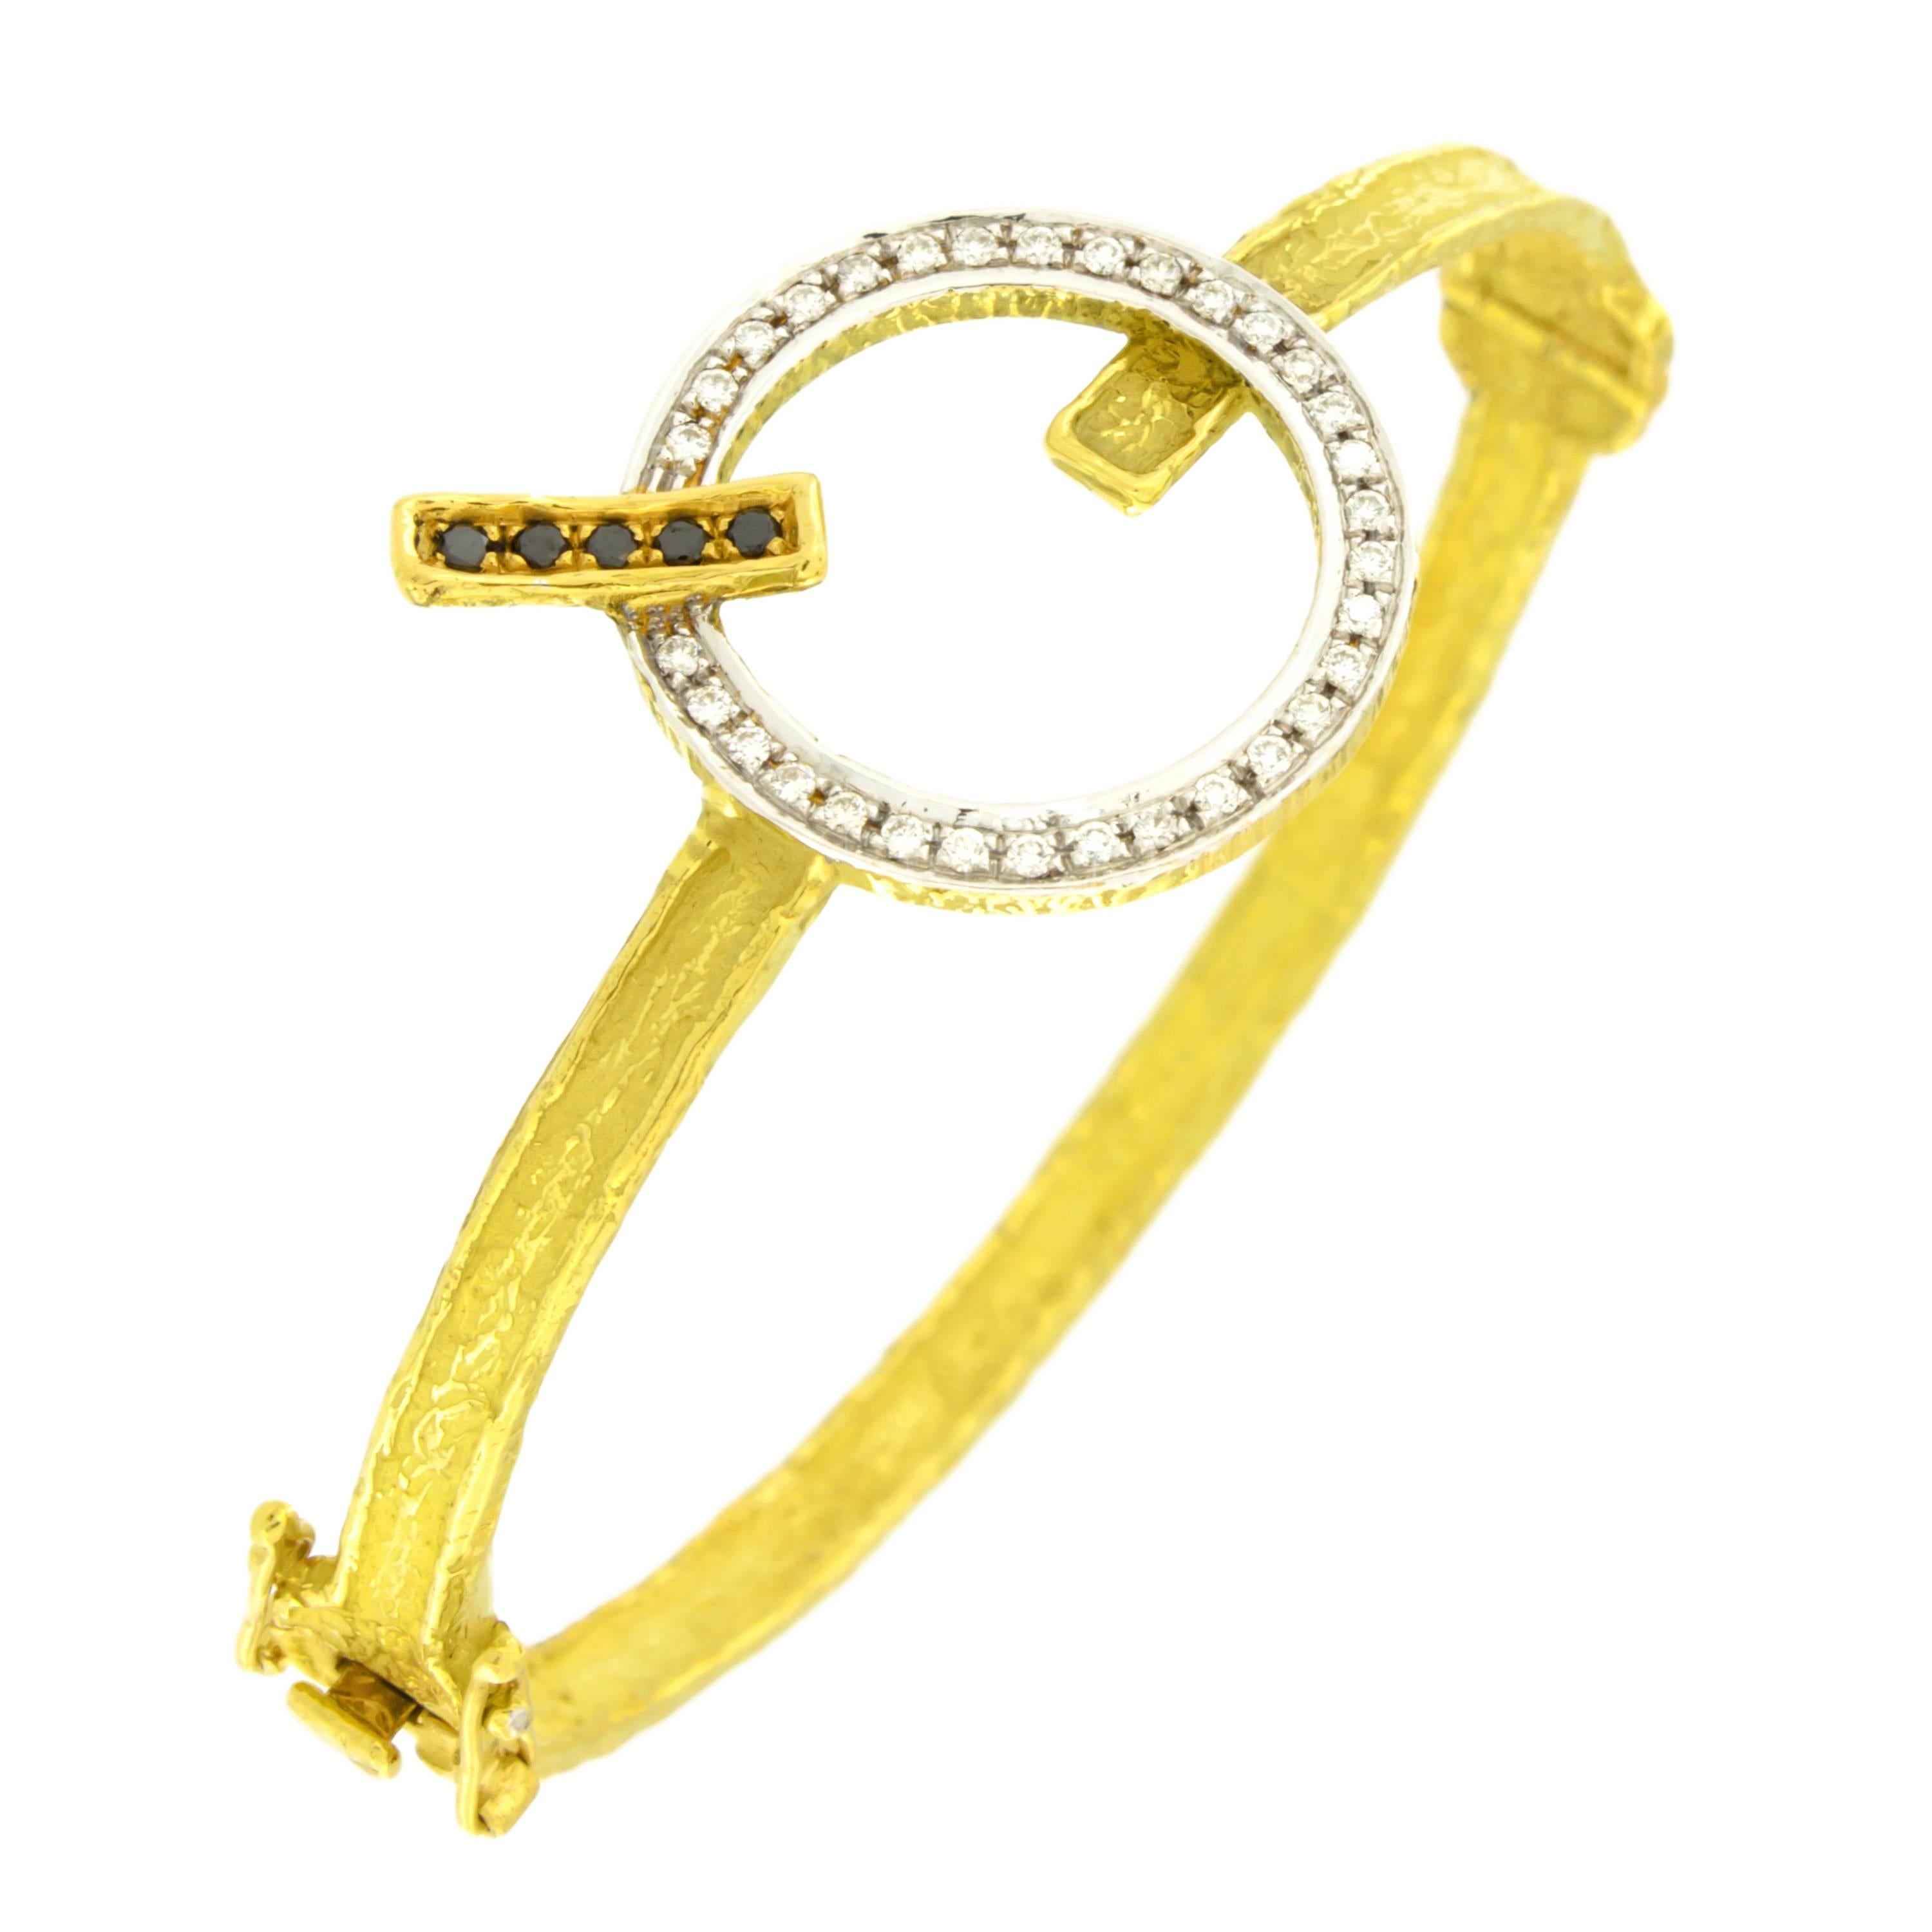 Sacchi Bracelet moderne en or jaune 18 carats avec diamants noirs et blancs et pierres précieuses